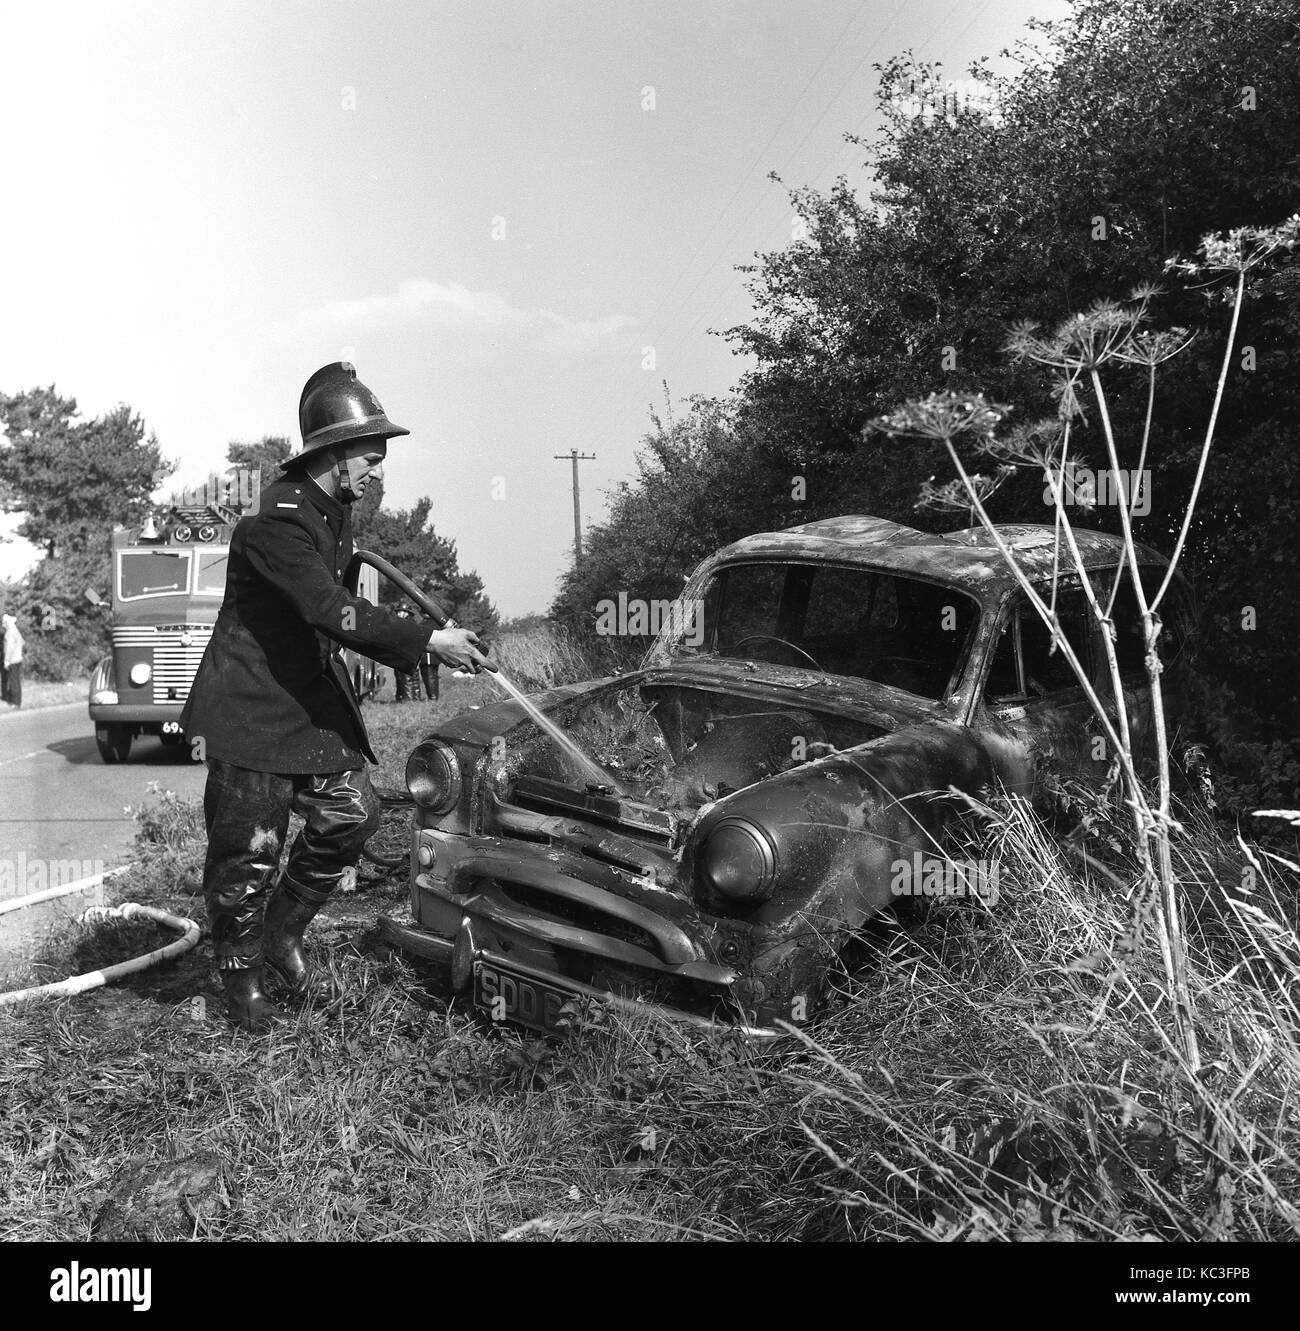 1960, historische, Feuerwehrmann, Uniform und Helm sprühen Wasser in eine verbrannte kleine Auto auf einer Kante an der Seite einer ländlichen Straße, England, UK. Stockfoto